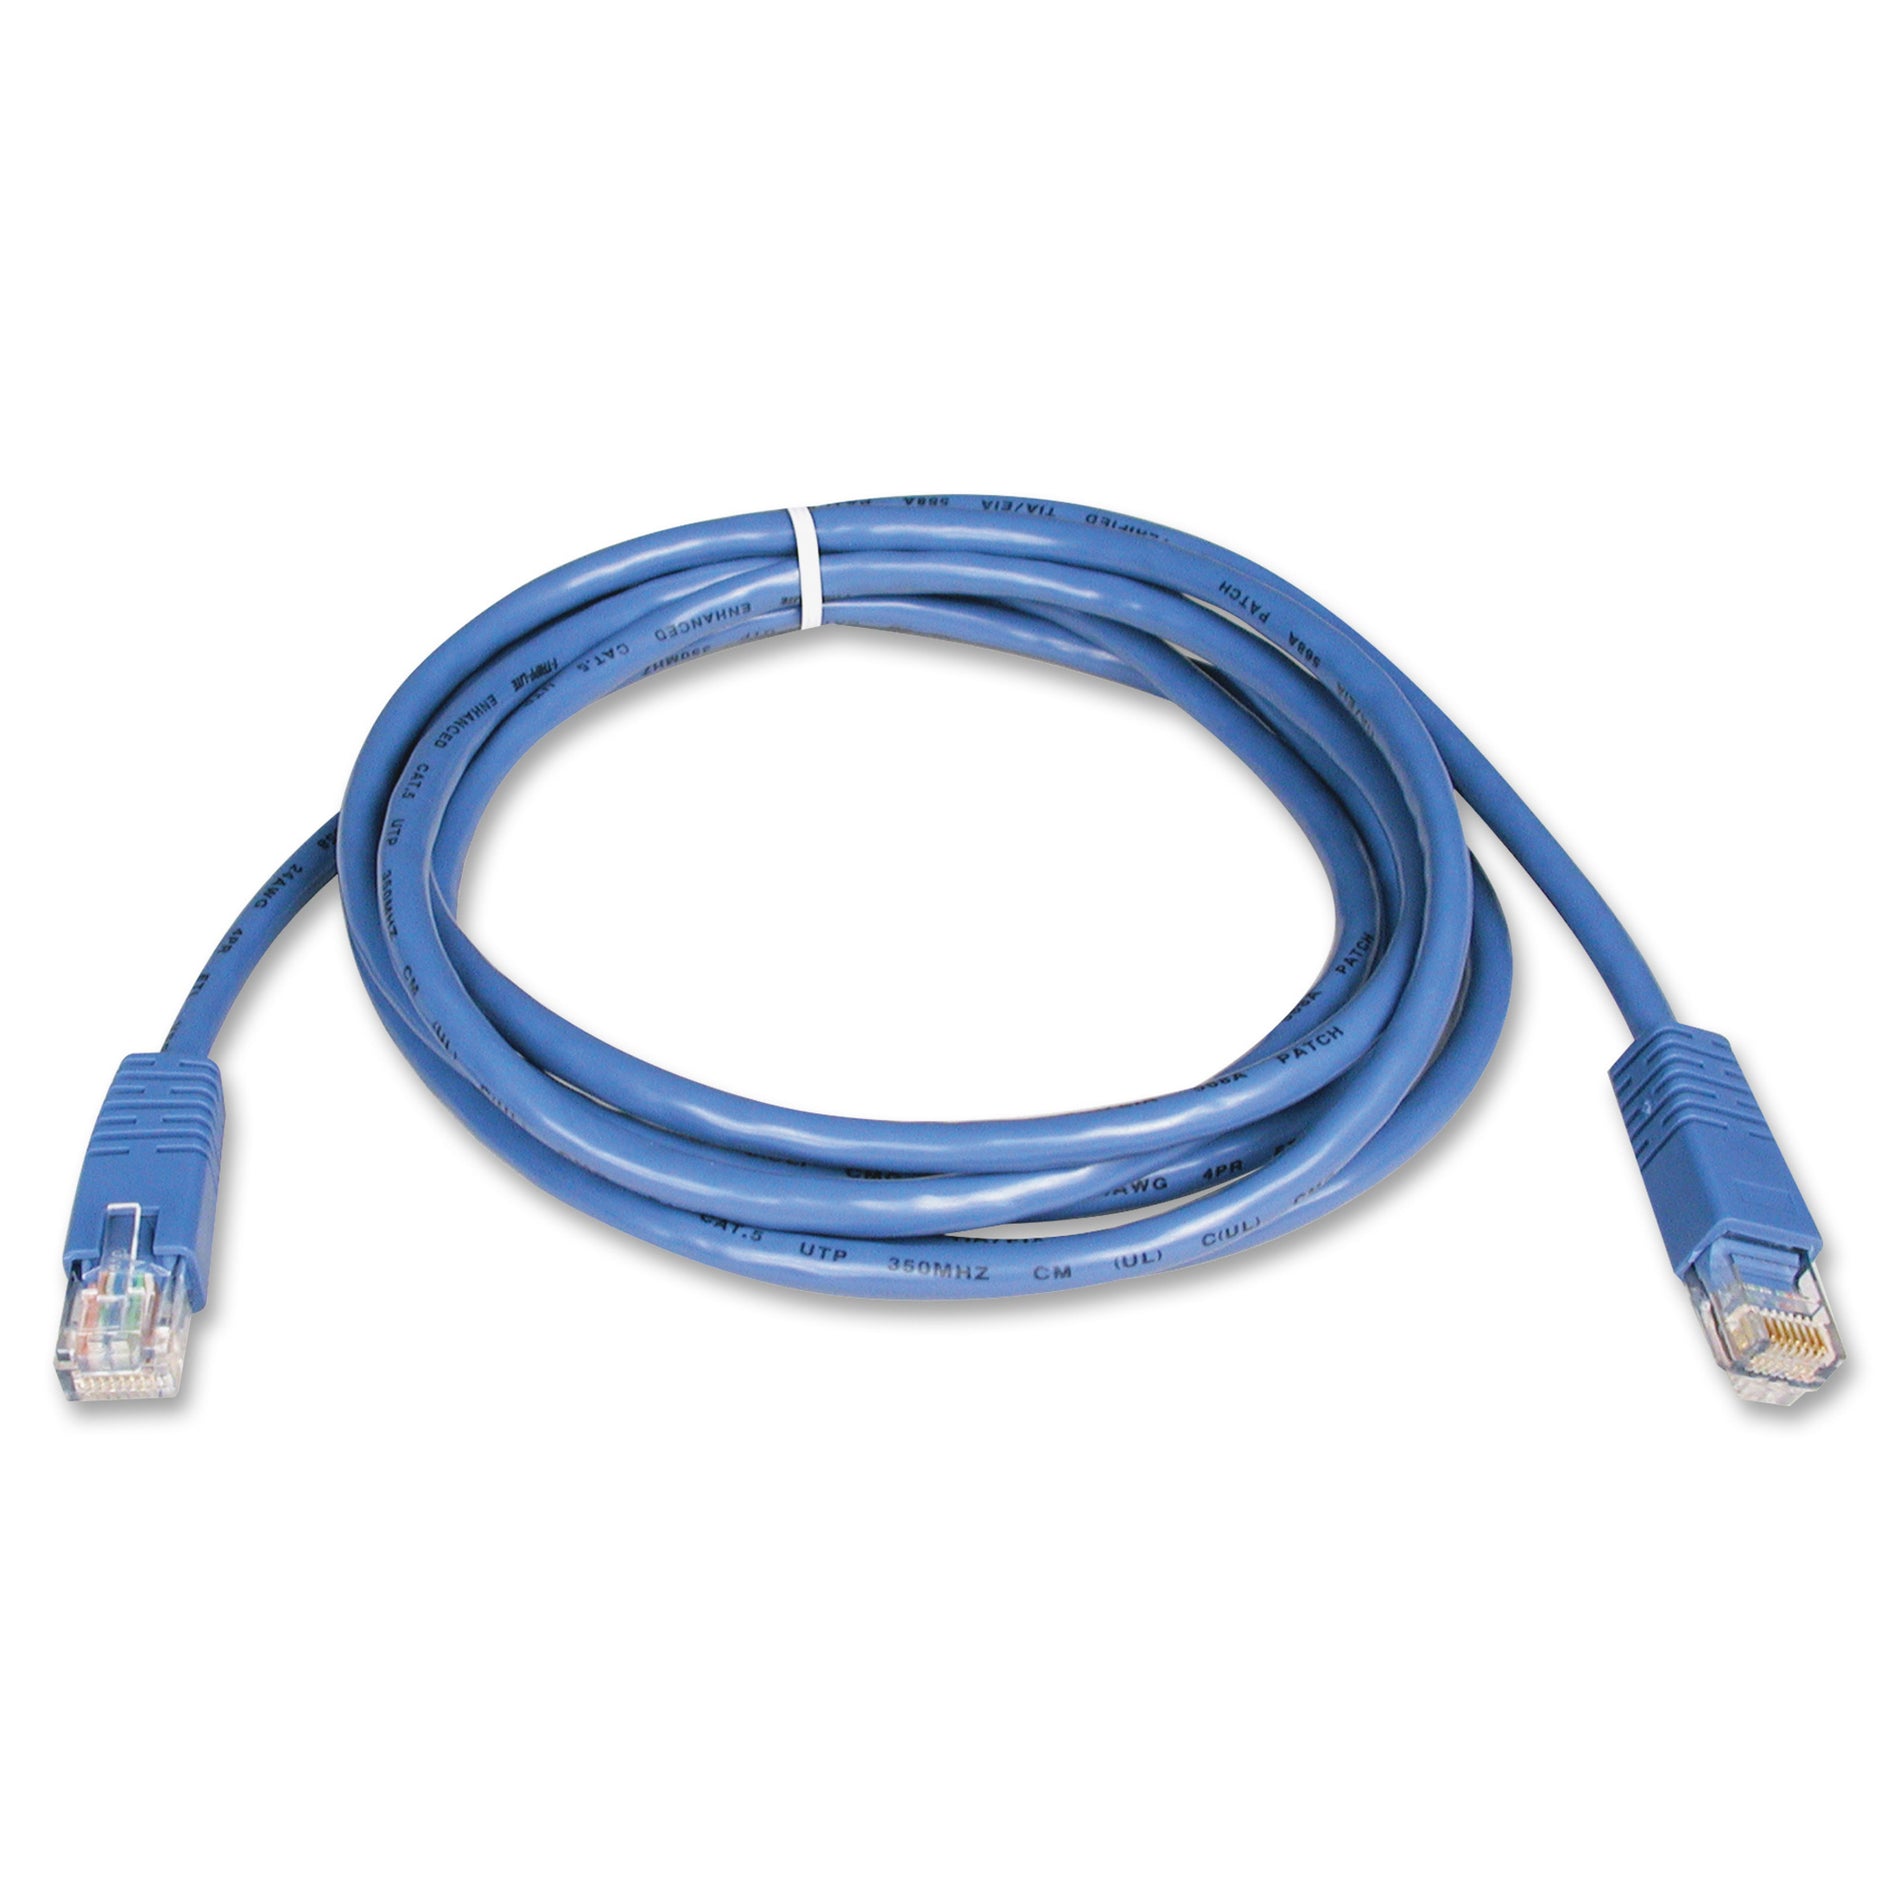 Tripp Lite N002-010-BL Cat5e Molded Patch Cable, 10ft, Blue - Lifetime Warranty